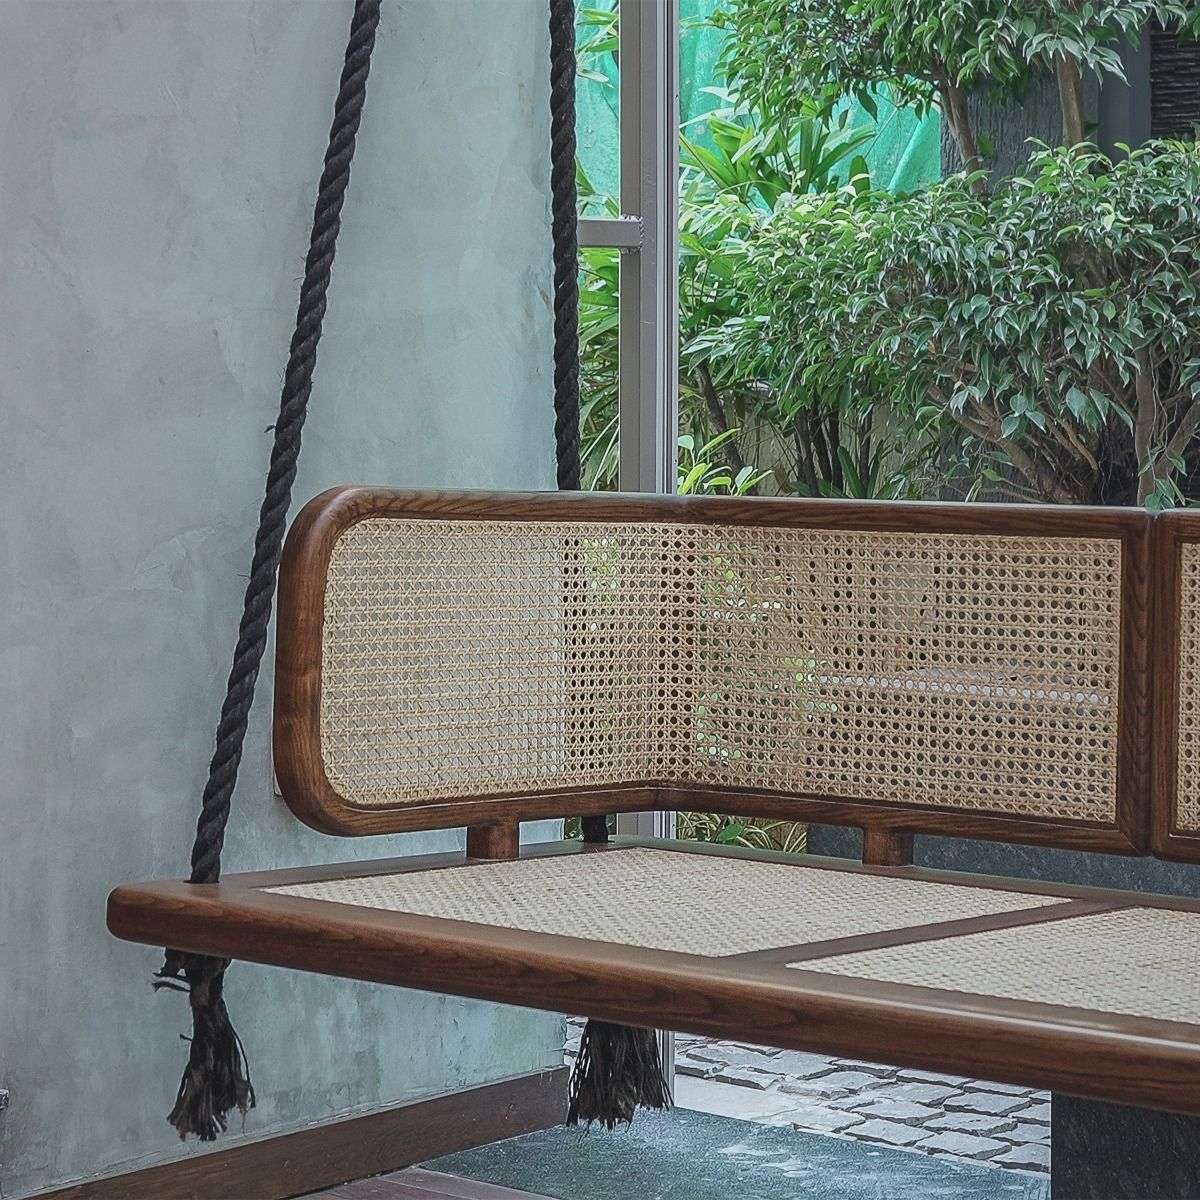 Sinag Chair